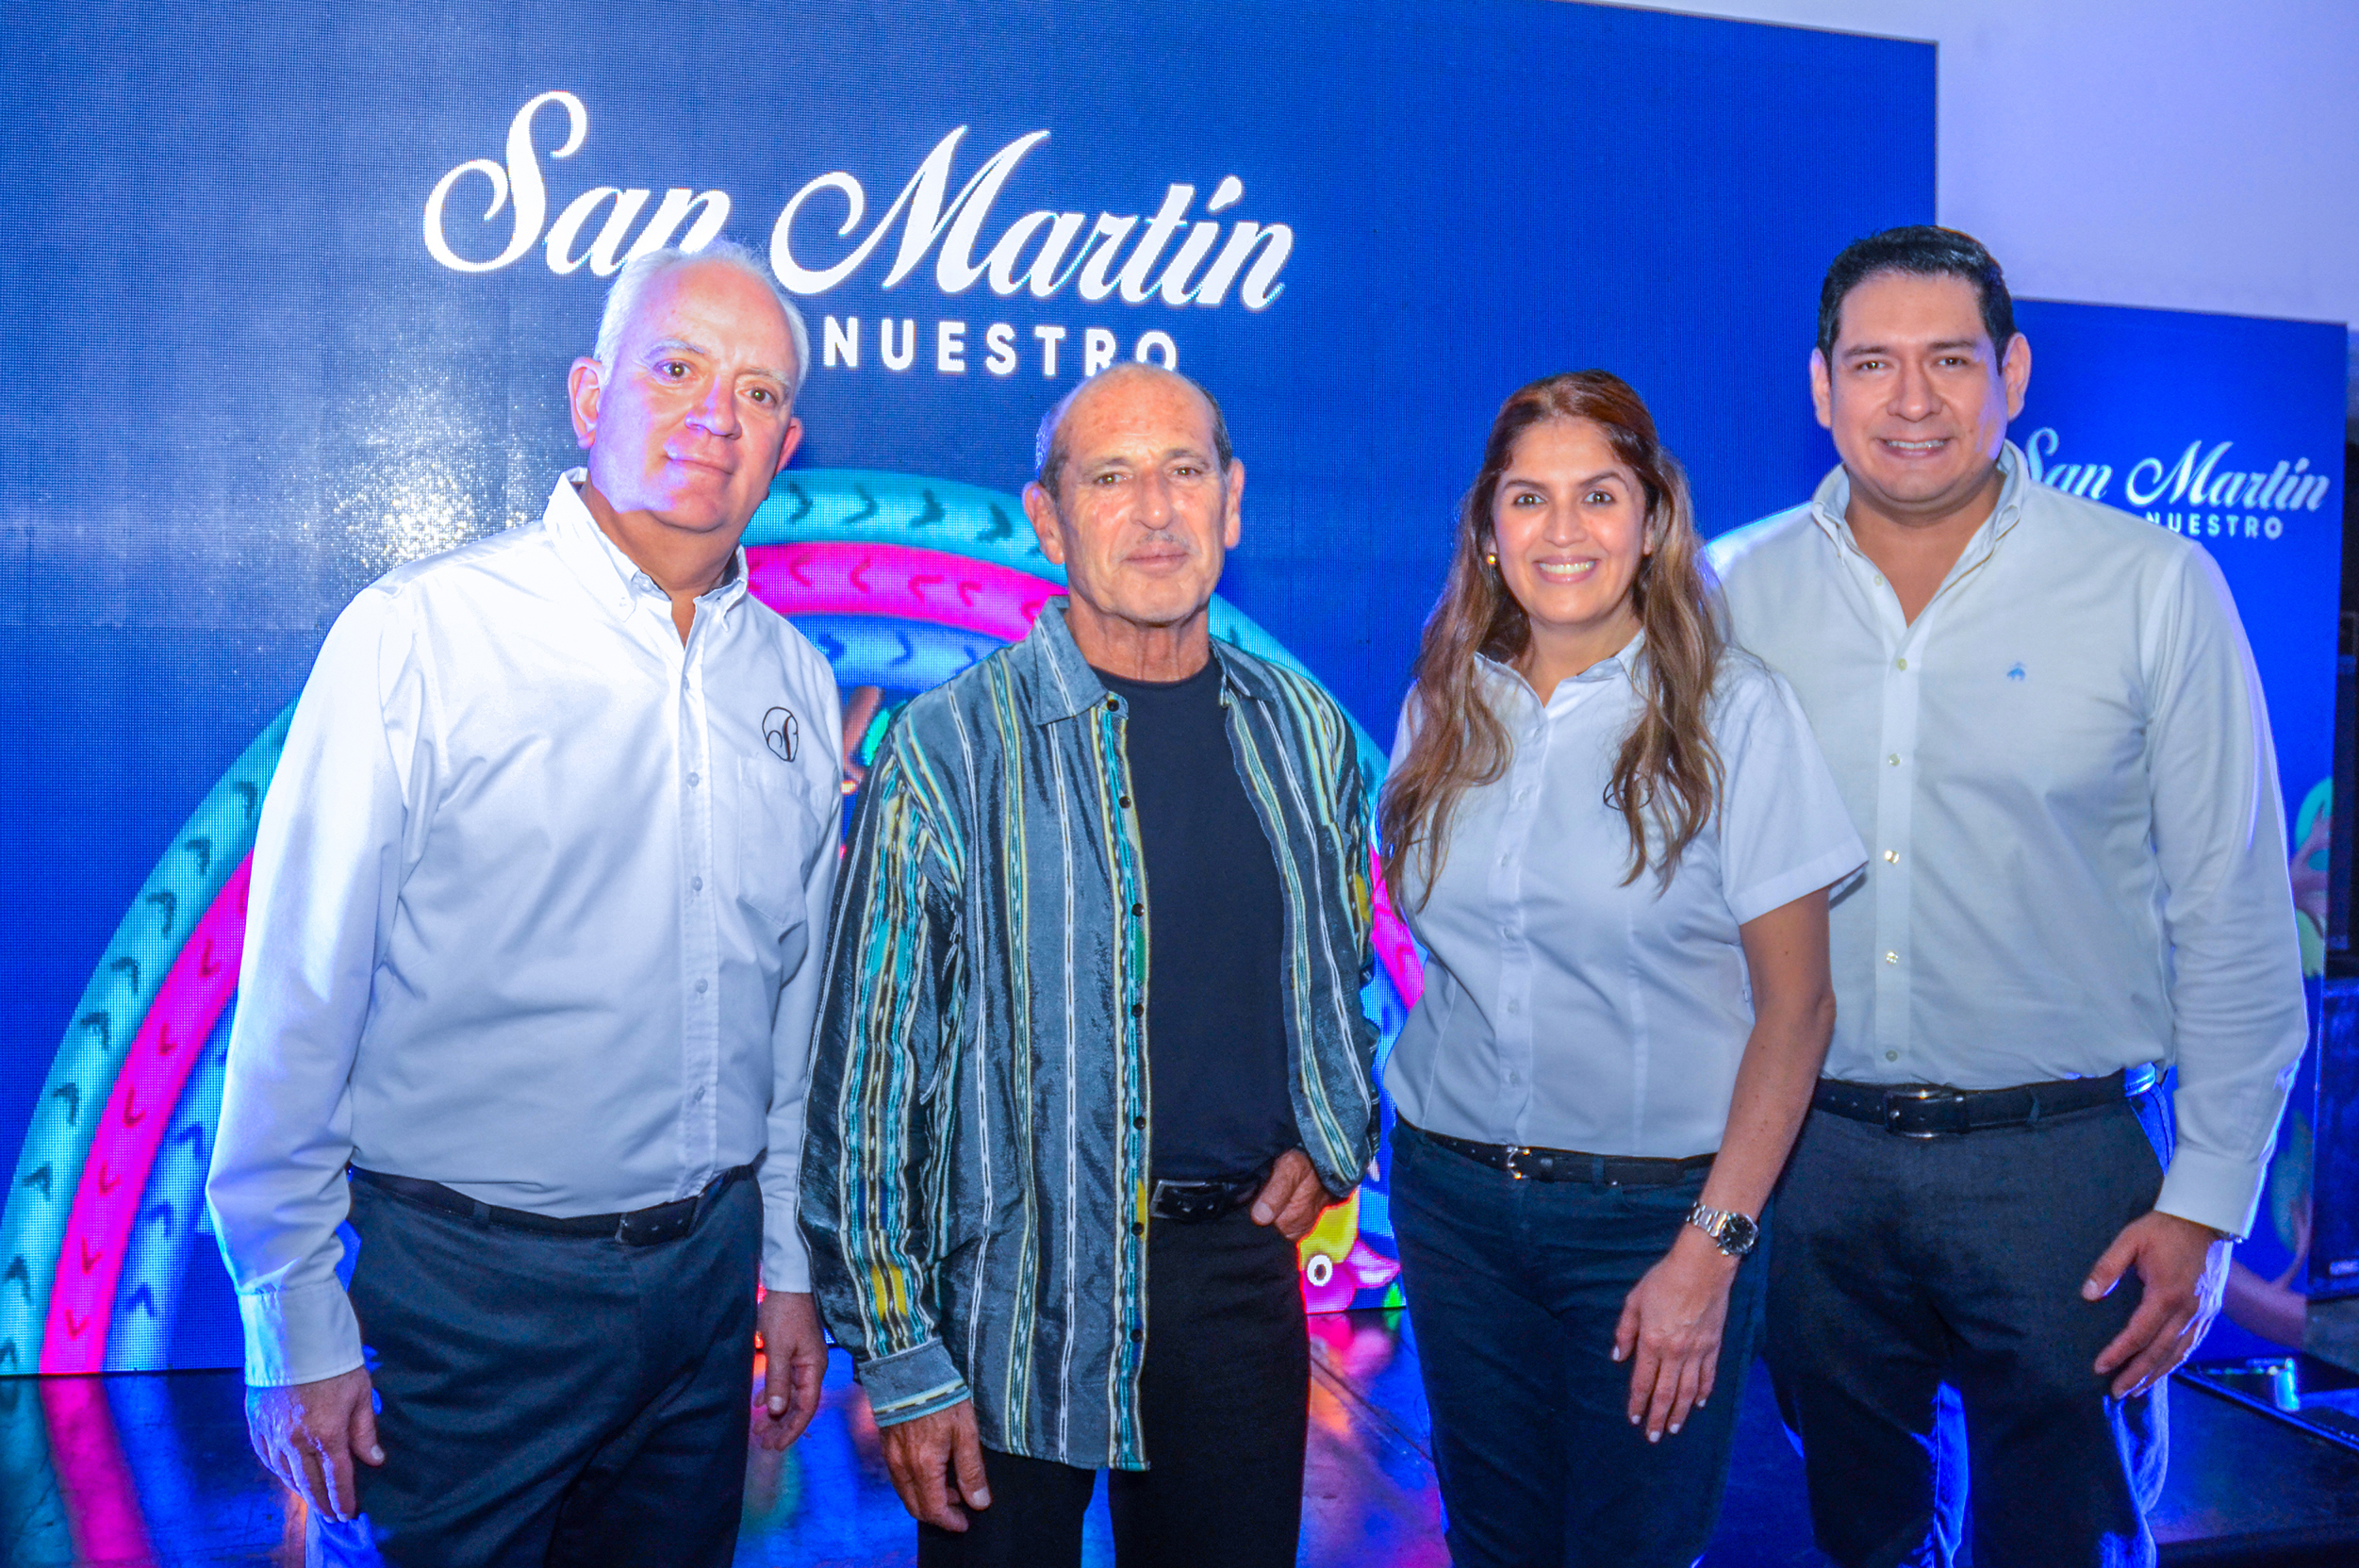 Representantes de San Martín junto con el artista David Ordóñez, hicieron la presentación de la campaña. Foto Prensa Libre: Cortesía